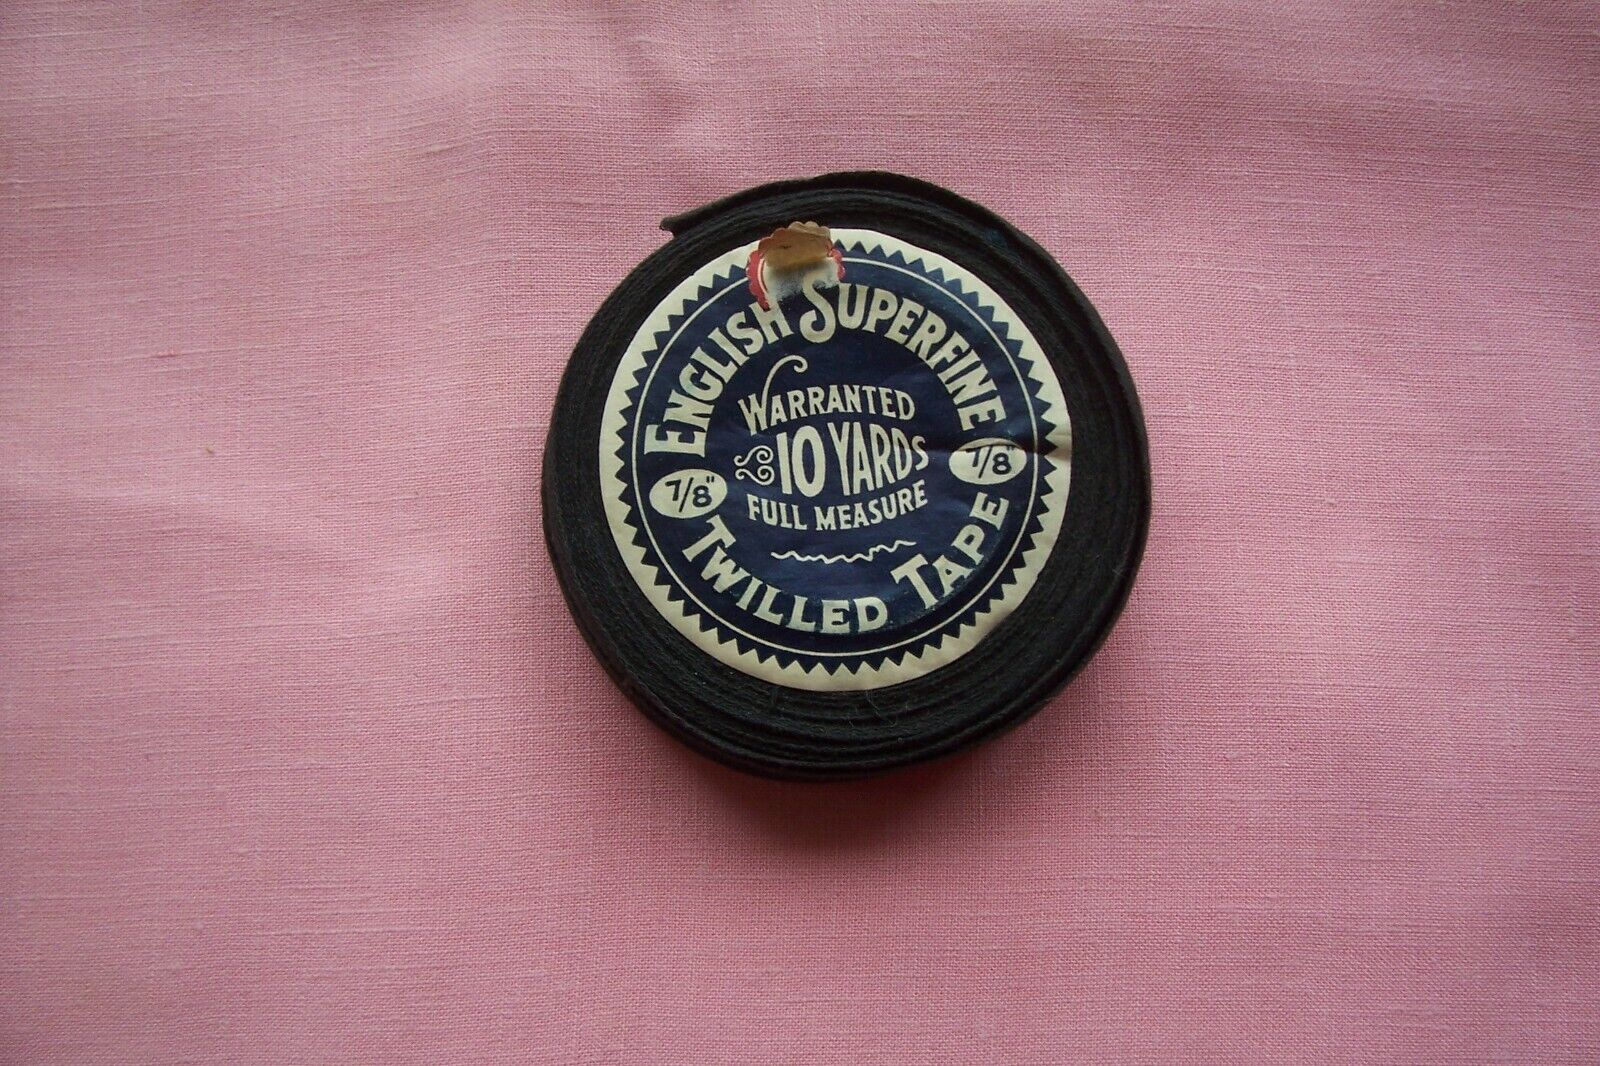  Antique Collectors Spool Cotton  Twill Tape English Superfine  7/8" Dark Blue